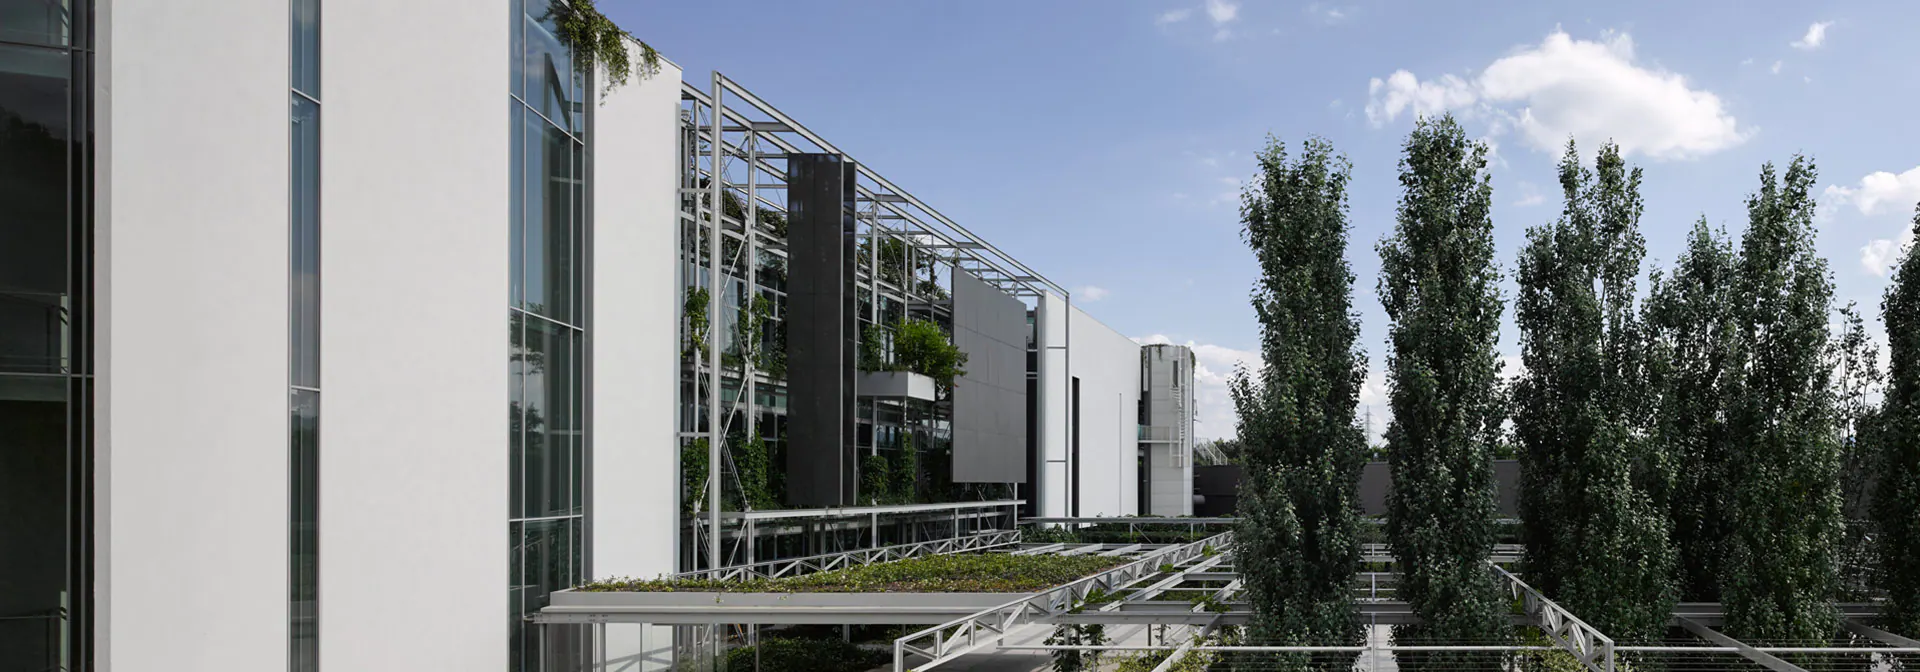 Το νέο εργοστάσιο της Prada είναι ένα πράσινο έργο Τέχνης στην καρδιά της Τοσκάνης